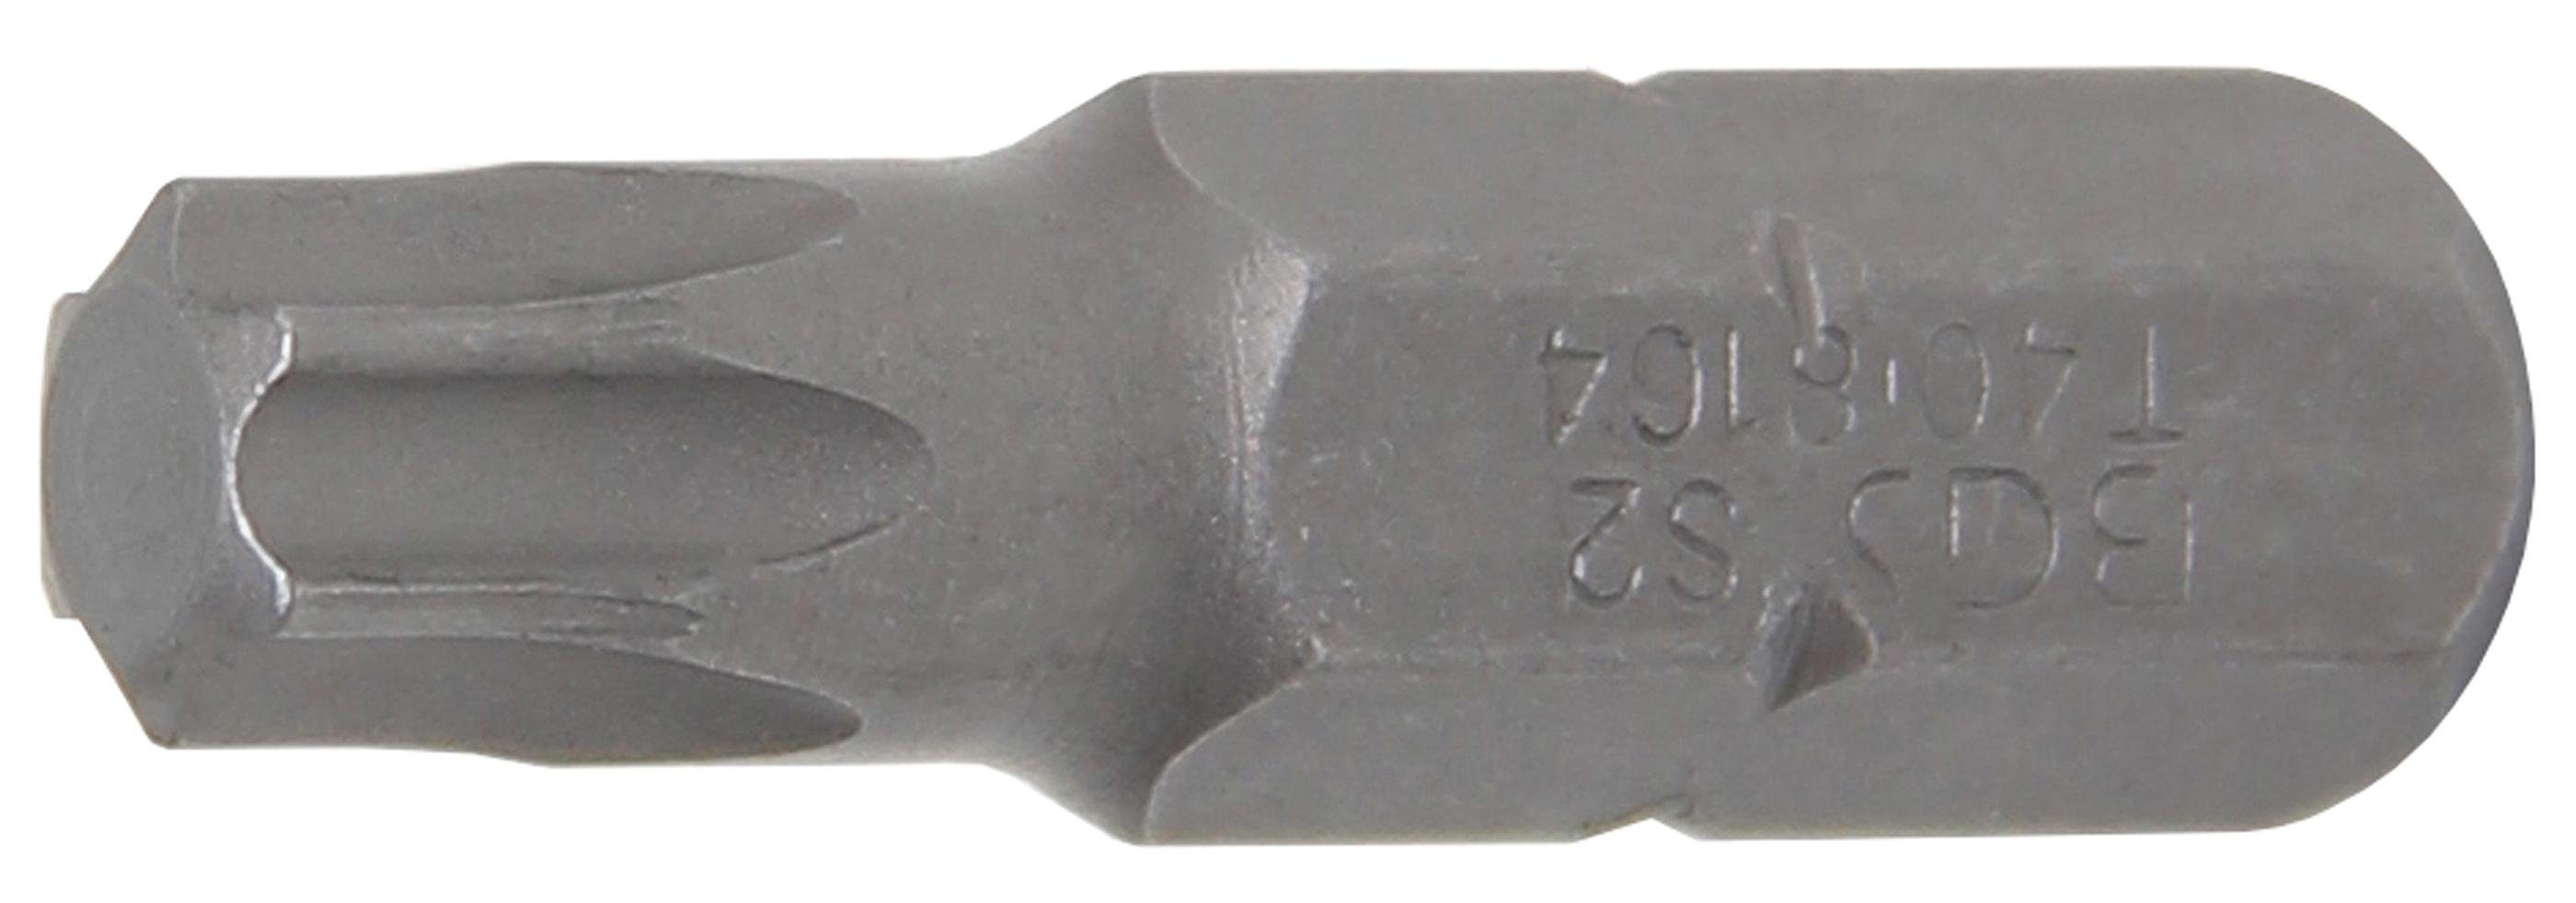 BGS technic Bit-Schraubendreher Bit, Antrieb Außensechskant 8 mm (5/16), T-Profil (für Torx) T40 | Schraubendreher